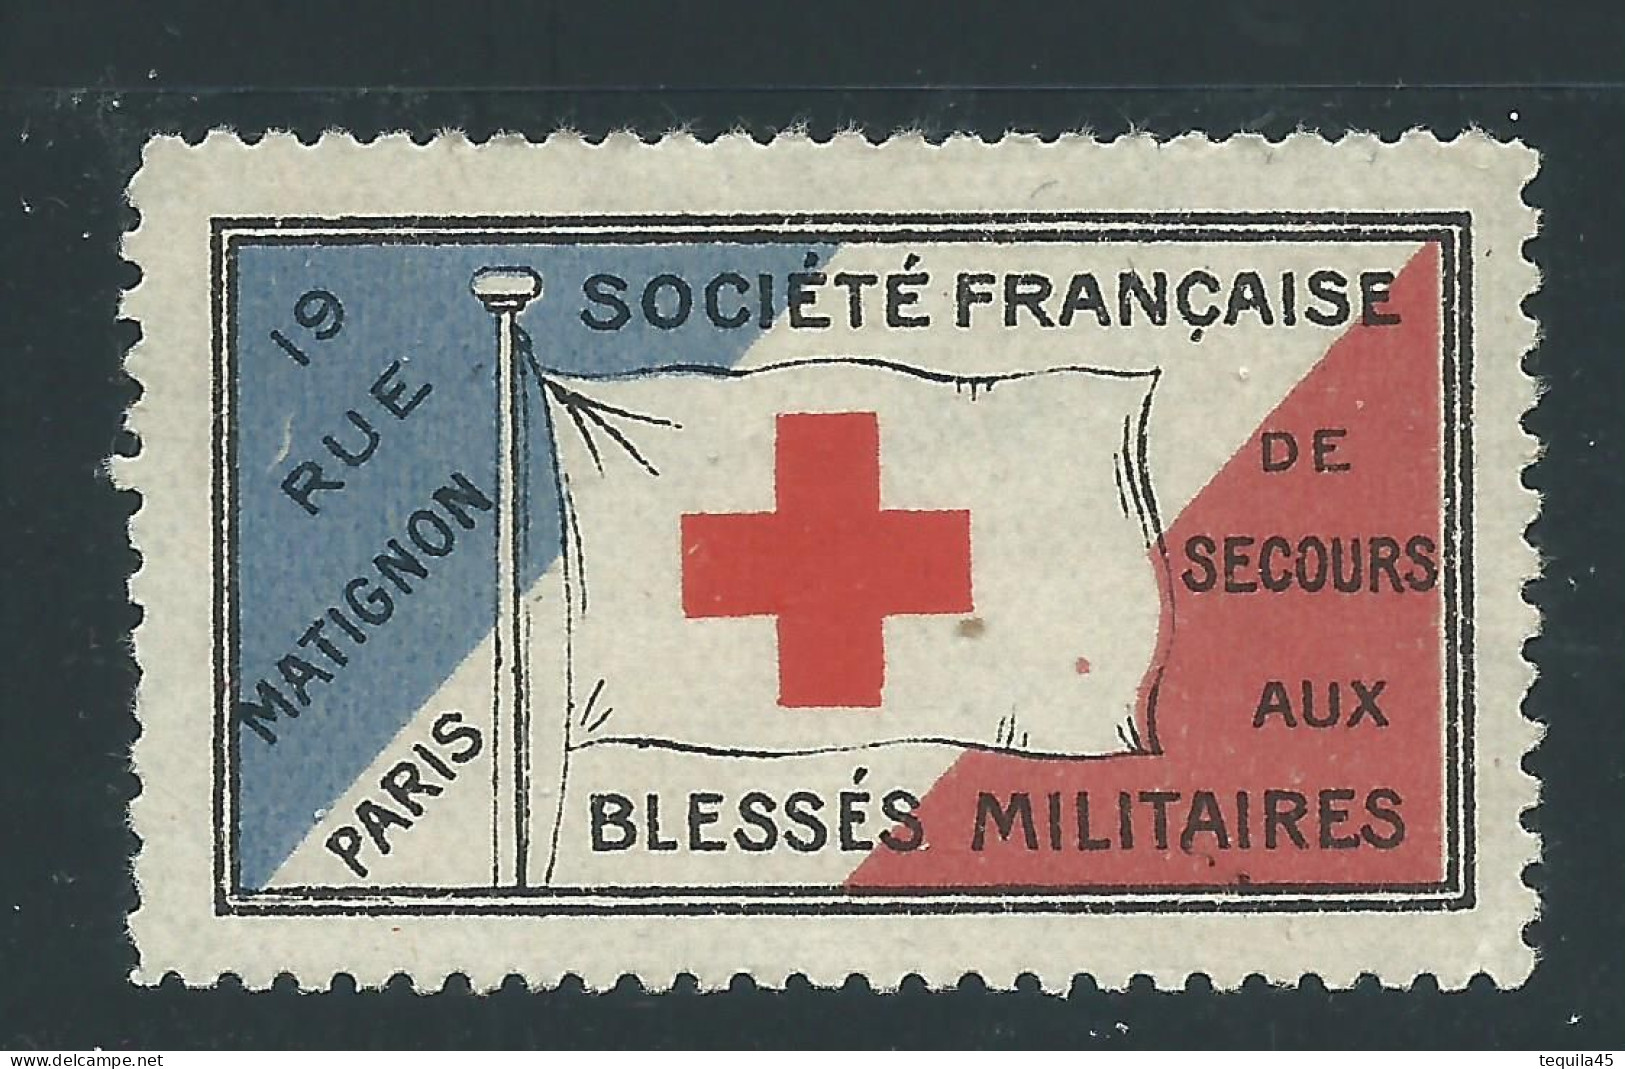 VIGNETTE DELANDRE - Secours Blessés Militaires - France - WWI WW1 Cinderella Poster Stamp Grande Guerre 1914 1918 - Croix Rouge